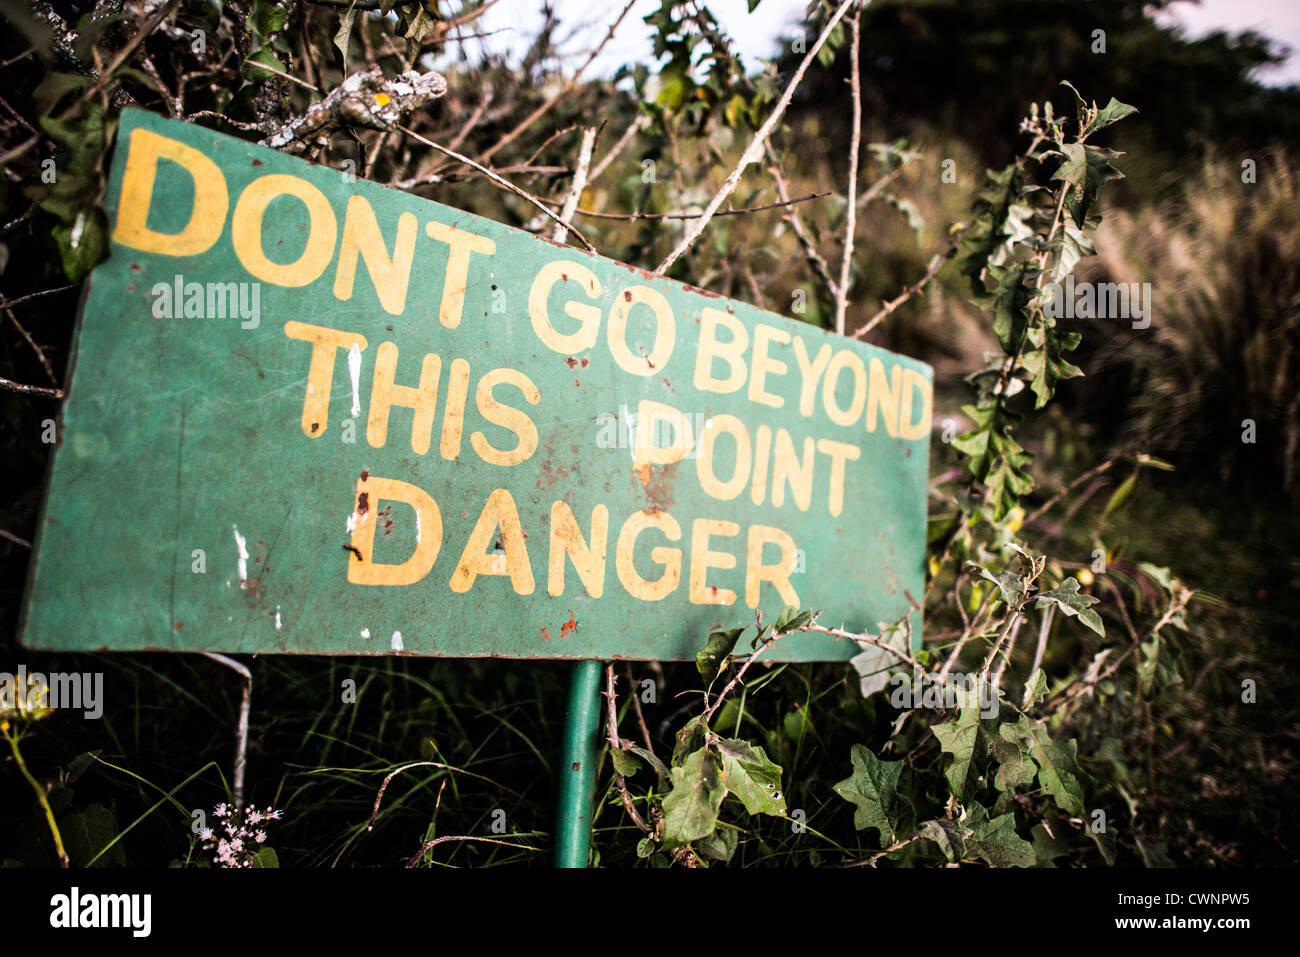 Área de conservación Ngorongoro, Tanzania - Un signo de advertencia de peligro en el Simba camping en el borde del cráter del Ngorongoro, parte del circuito del norte de Tanzania de parques nacionales y reservas naturales. Foto de stock